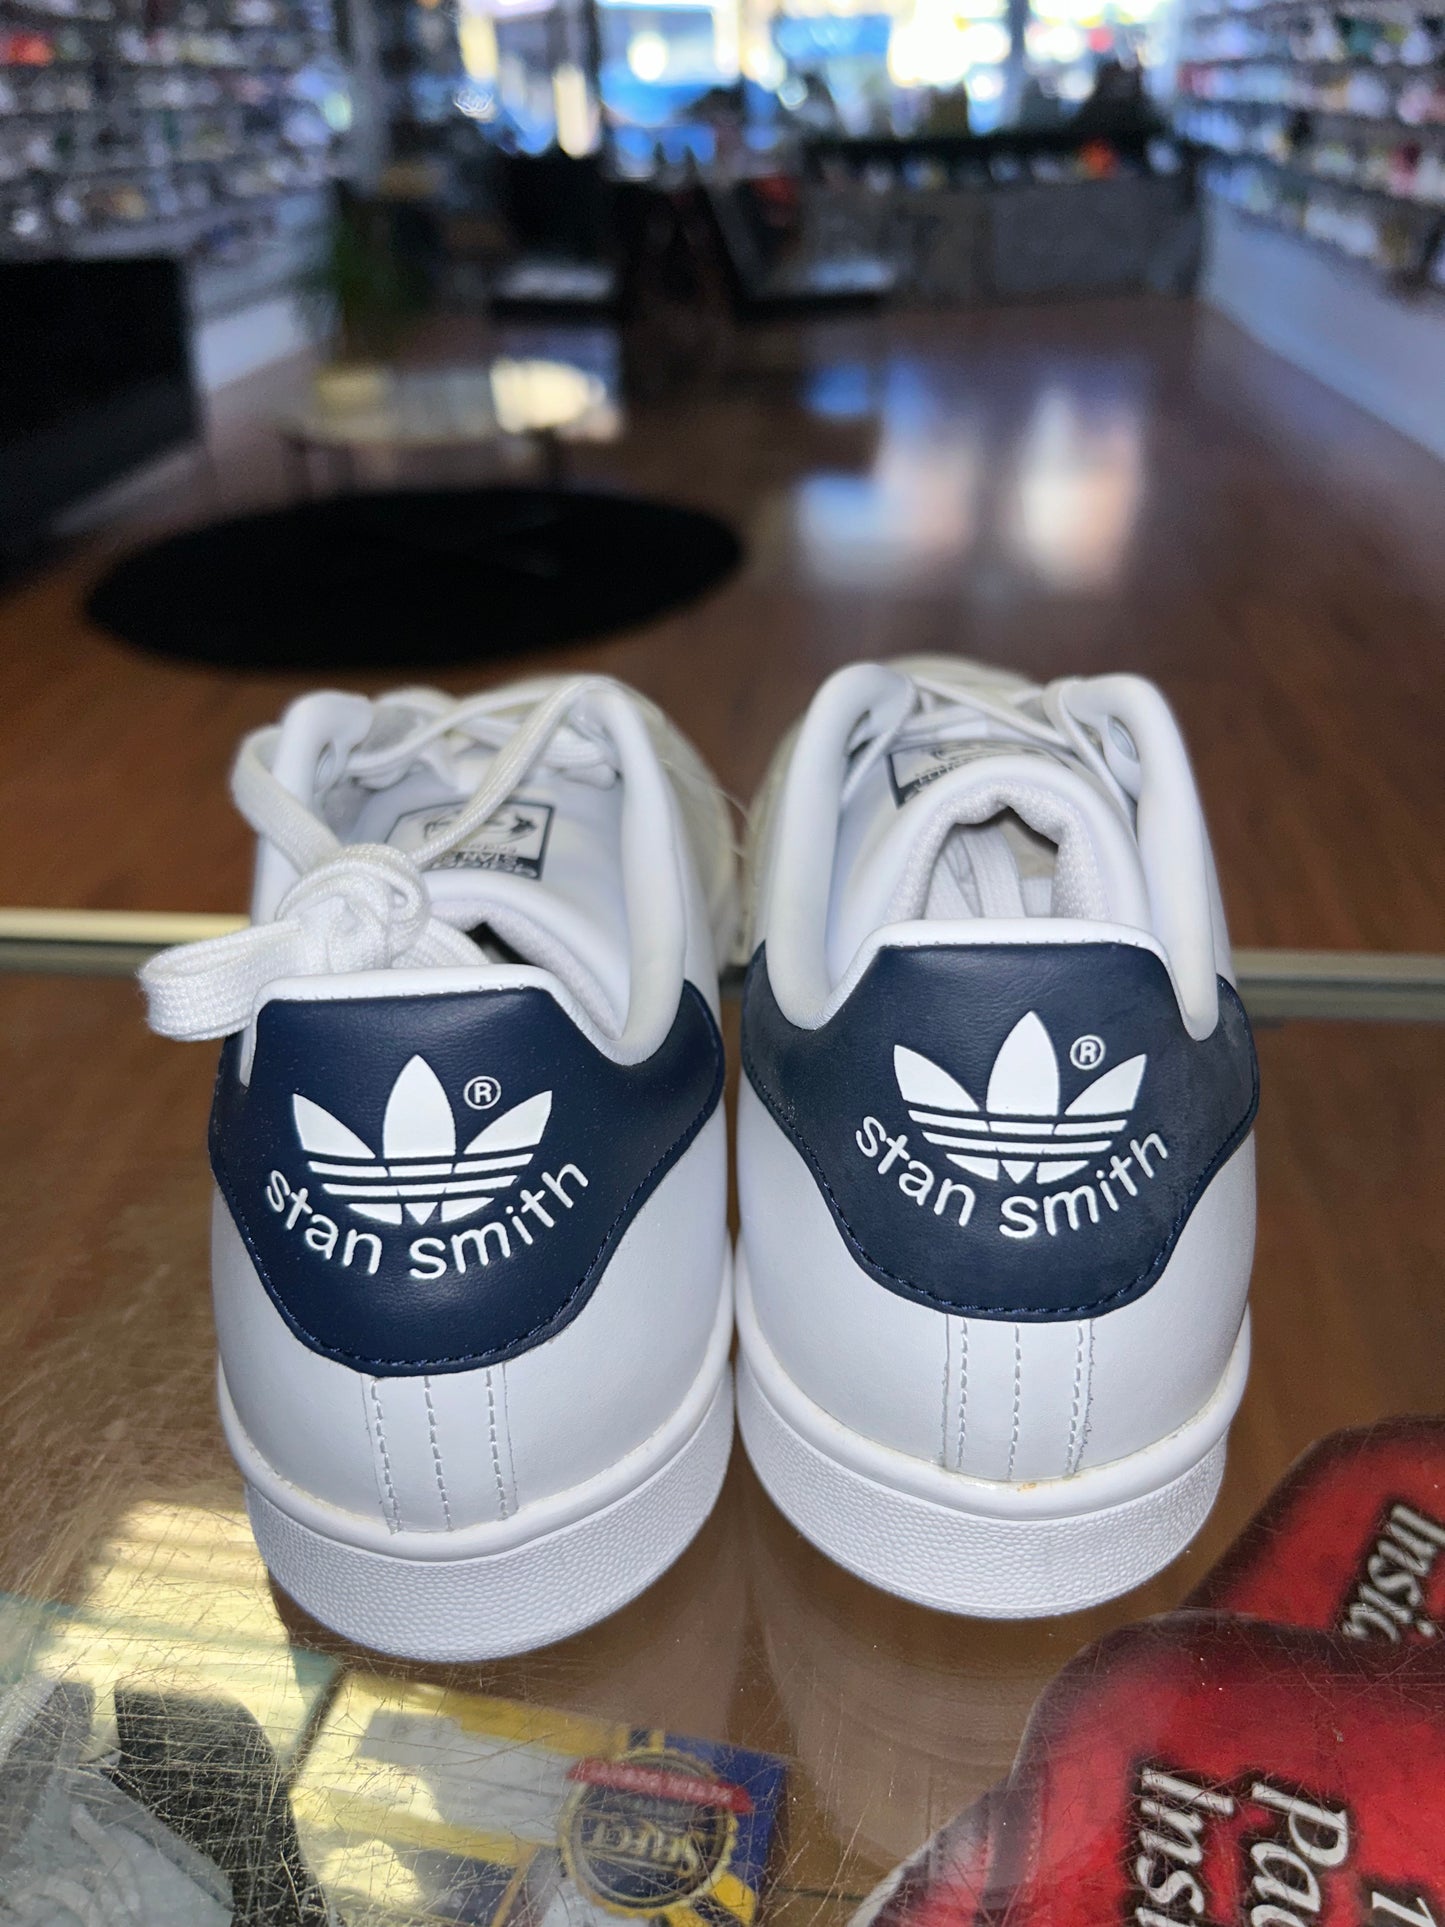 Size 8.5 (10W) Adidas Stan Smith "Navy” Brand New (MAMO)